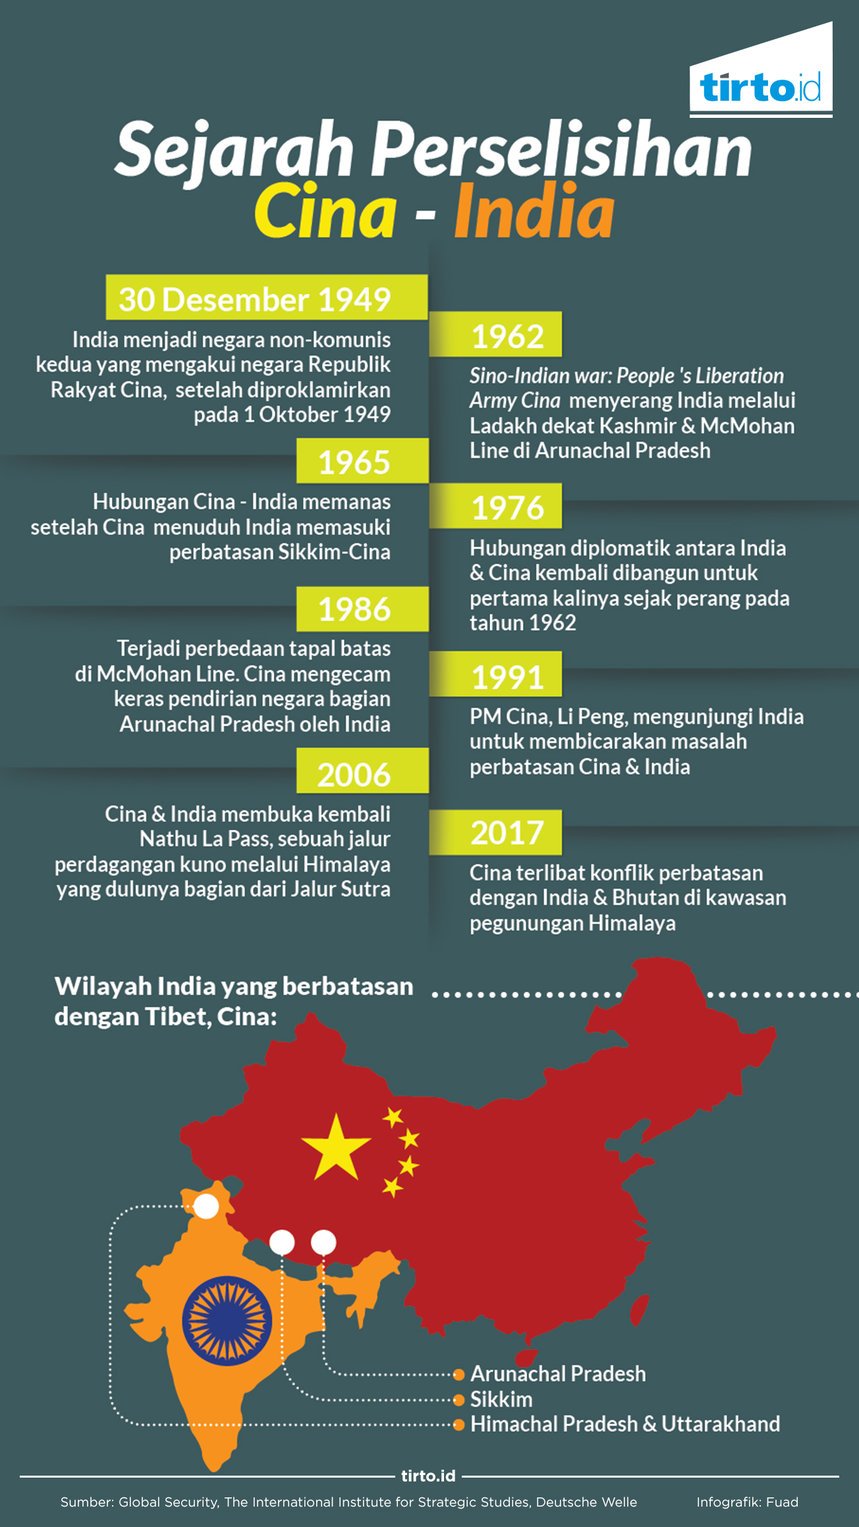 Infogrrafik sejarah perselisihan cina dan india